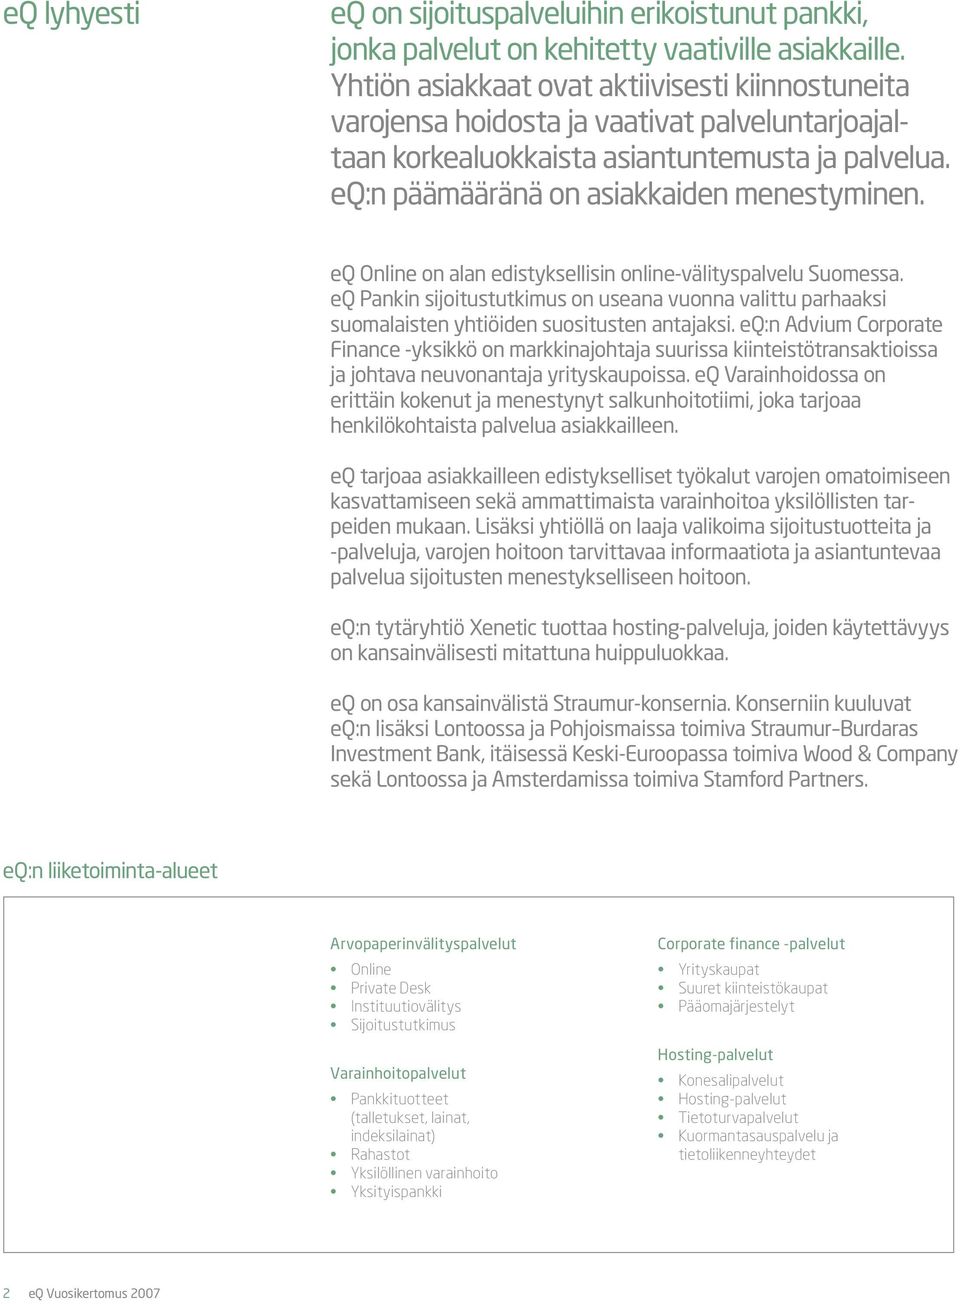 eq Online on alan edistyksellisin online-välityspalvelu Suomessa. eq Pankin sijoitustutkimus on useana vuonna valittu parhaaksi suomalaisten yhtiöiden suositusten antajaksi.